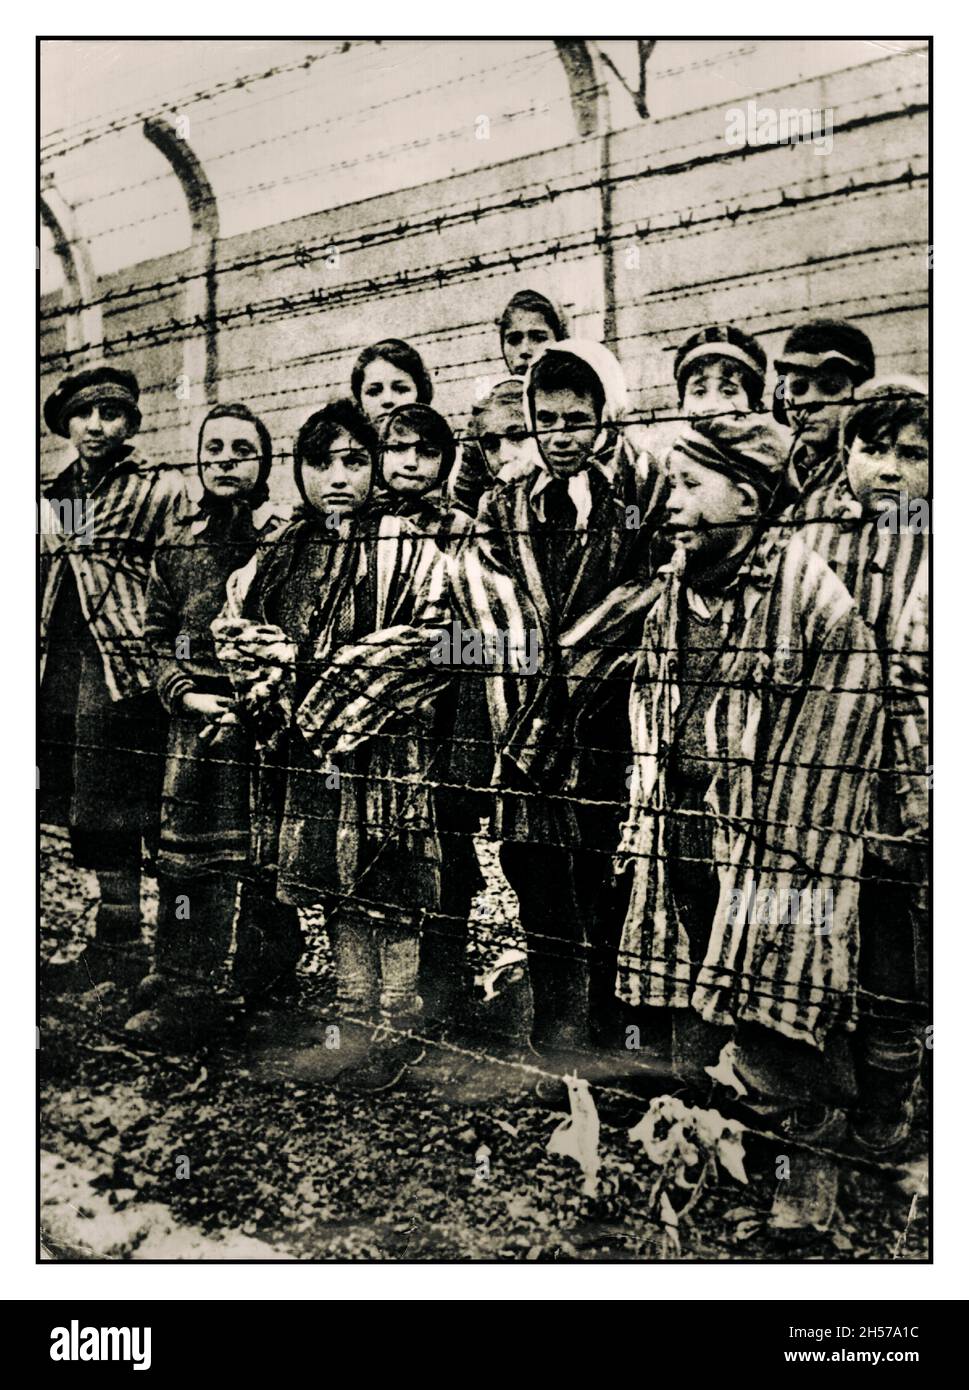 NIÑOS DE AUSCHWITZ AUSCHWITZ 1945 NIÑOS LIBERACIÓN DE PRISIONEROS Niños prisioneros con uniformes rayados apuñalan a sus liberadores desde detrás de una valla de alambre de púas en el famoso campo de exterminio nazi de WW2 Auschwitz, en el sur de Polonia. Segunda Guerra Mundial Segunda Guerra Mundial de pie silenciosamente emotionless detrás de la valla de alambre de púas en la Alemania nazi WW2 campo de concentración Auschwitz Birkenau Polonia. 1945 Liberación rusa Foto de stock